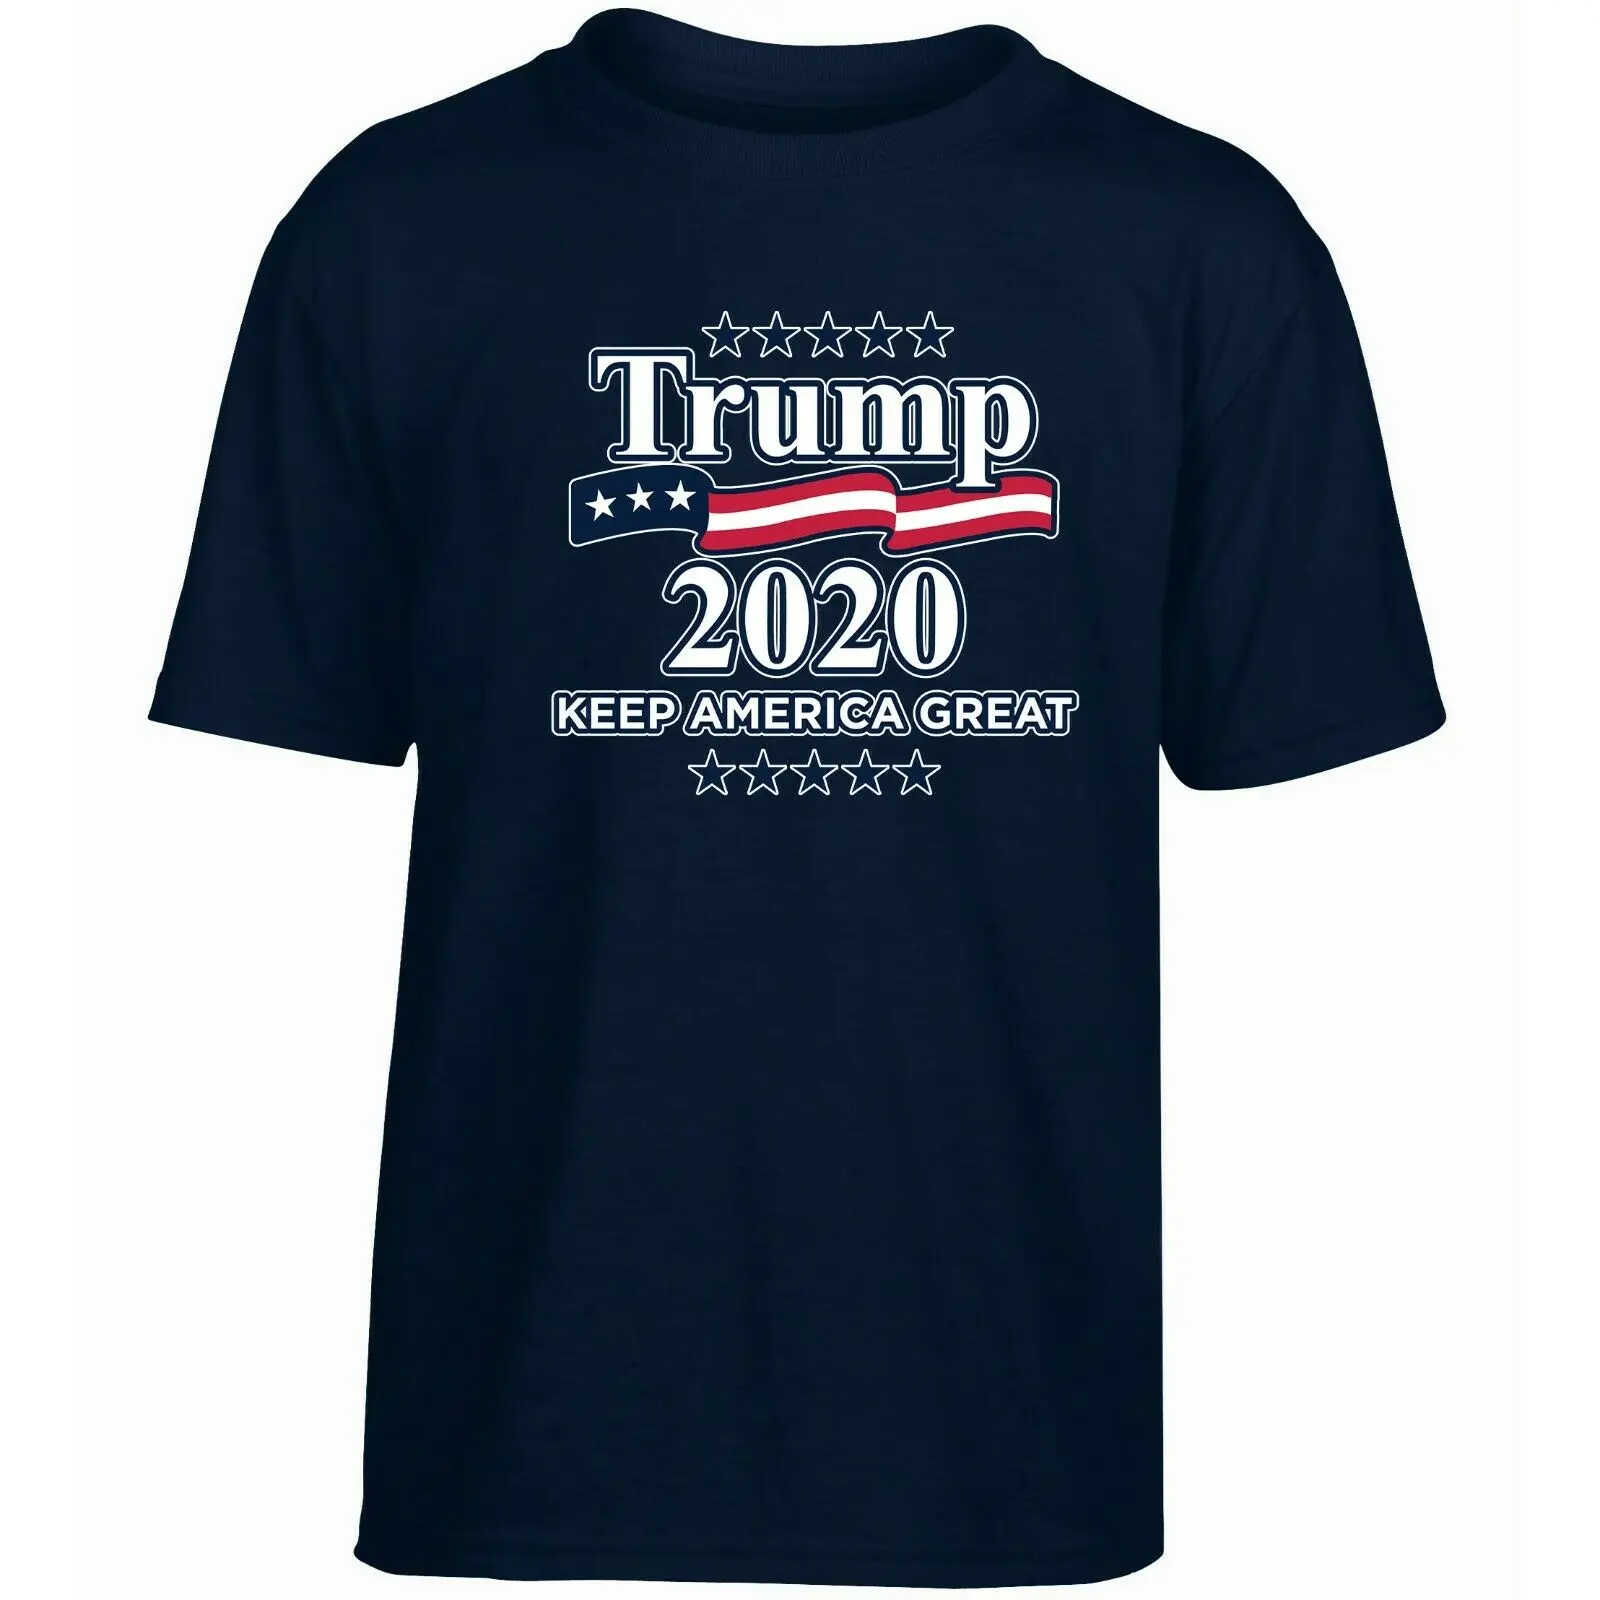 Дональд Трамп 2020 толстовки с надписью Make America Great Again для мужчин и женщин летняя